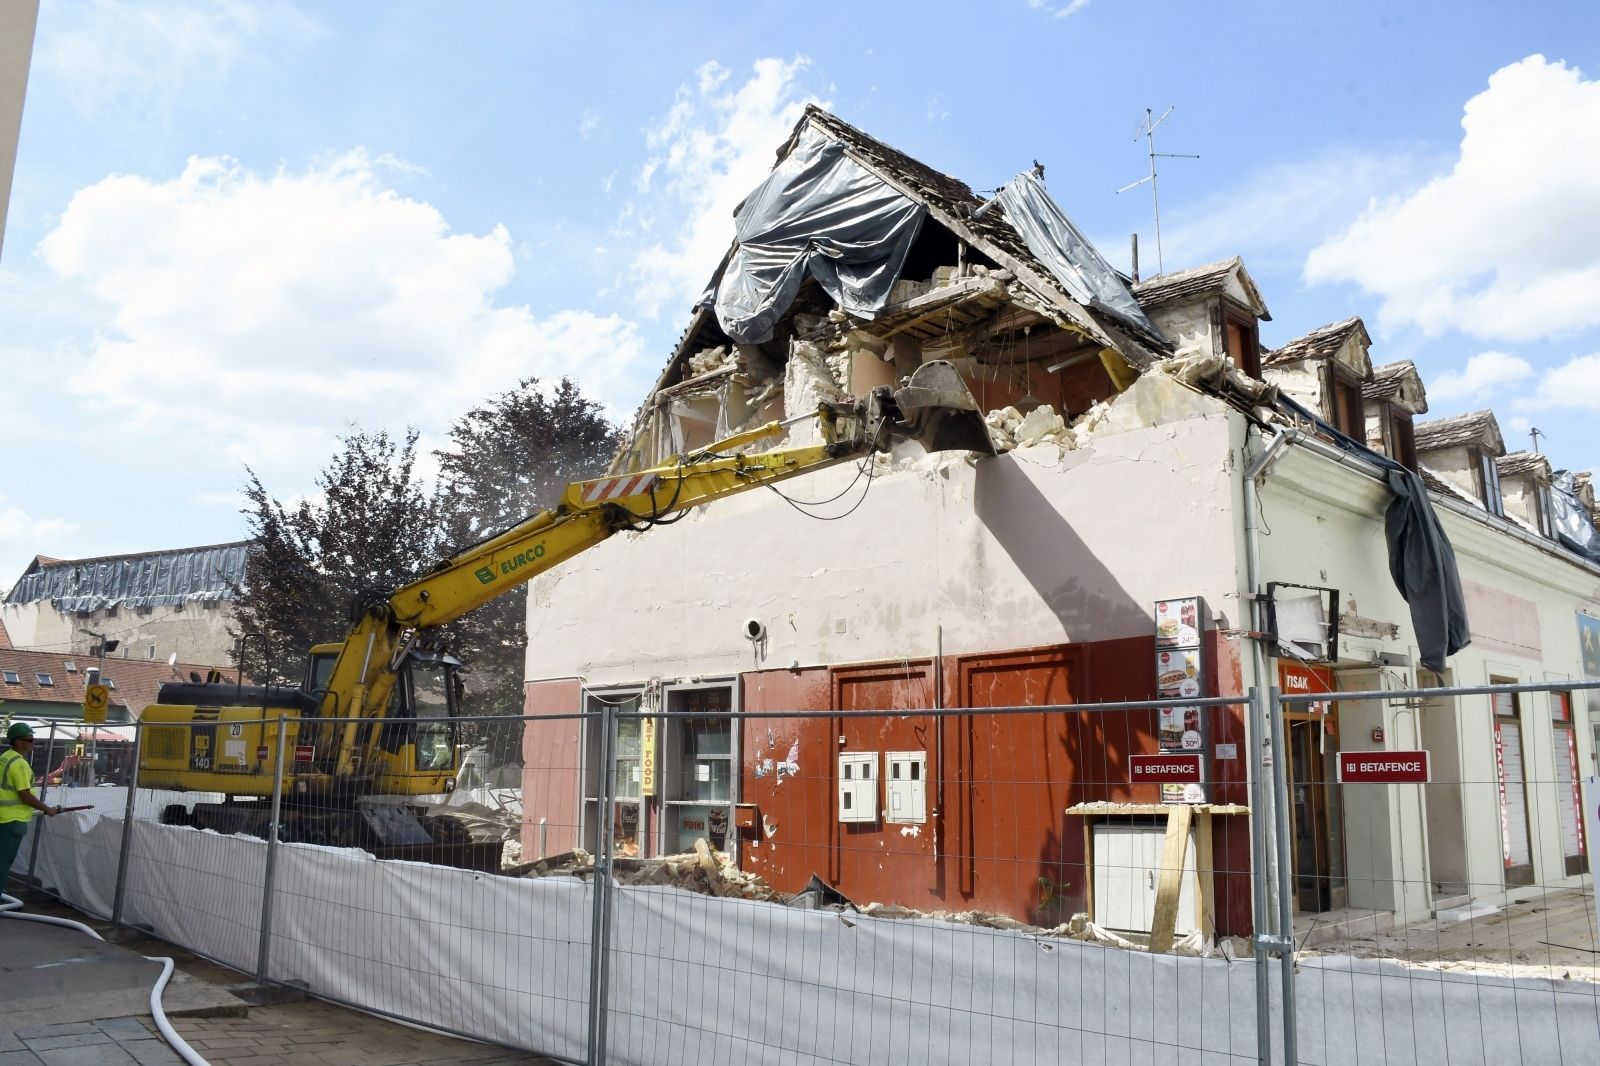 27.05.2021.,Sisak - Radnici gradjevinske tvrtke "Eurco" zapoceli su s rusenjem poslovno-stambenog objekta u Radicevoj ulici tesko ostecenog u prosinackom potresu.
Photo: Nikola Cutuk/PIXSELL